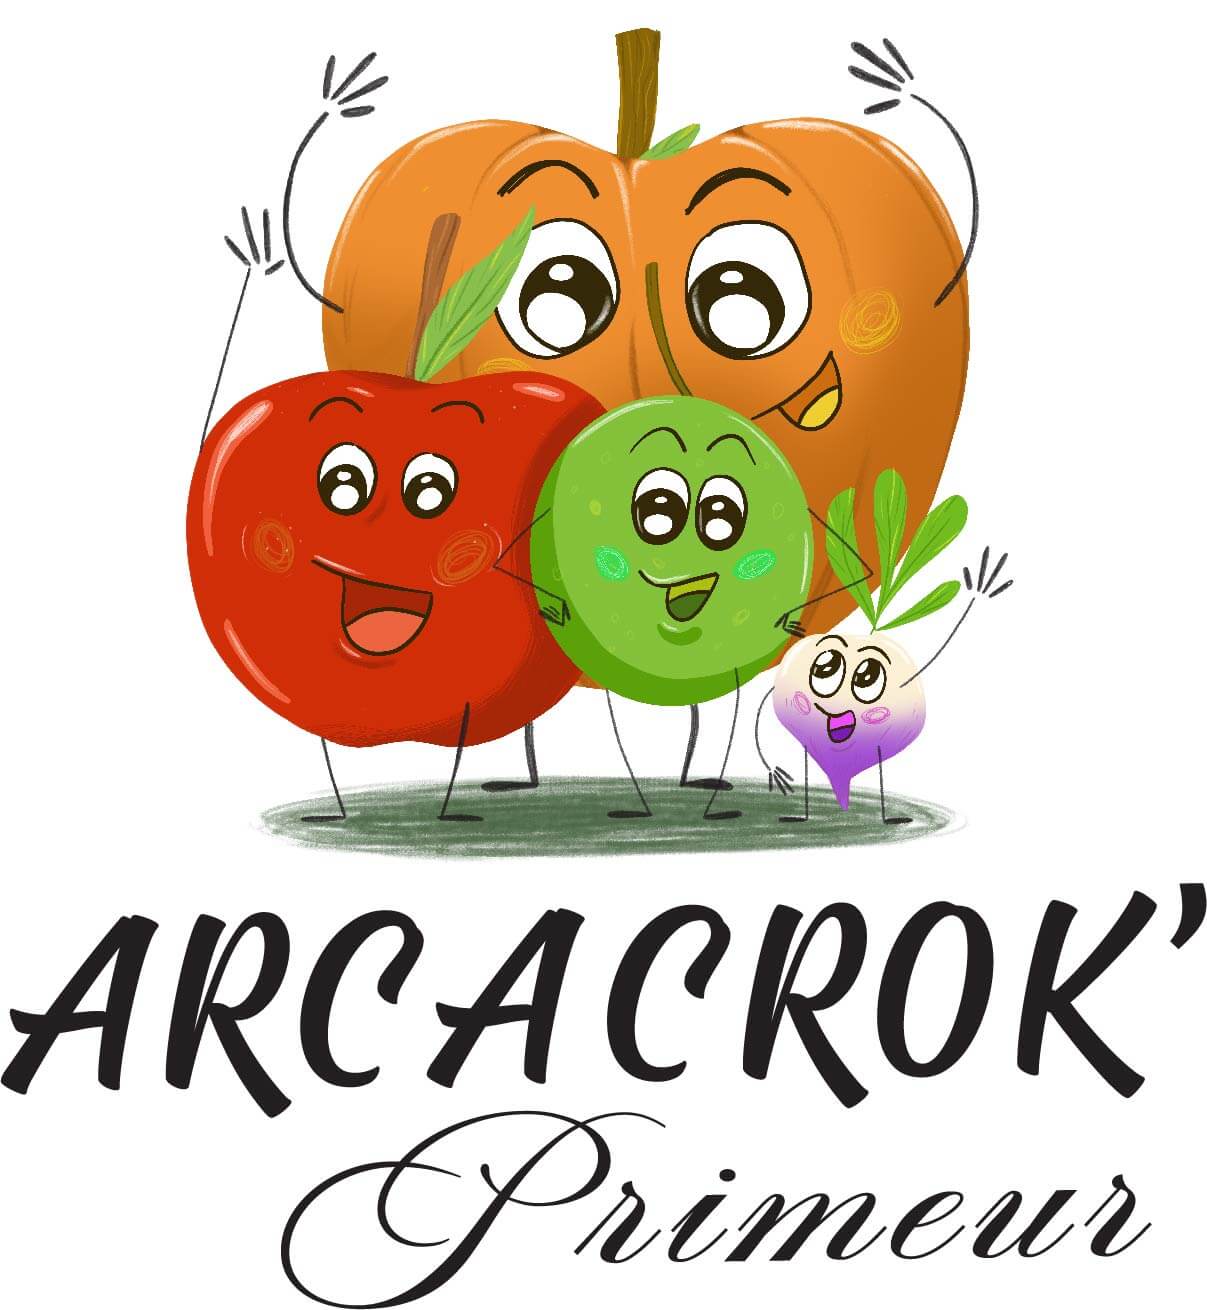 PrimeurArcacrok